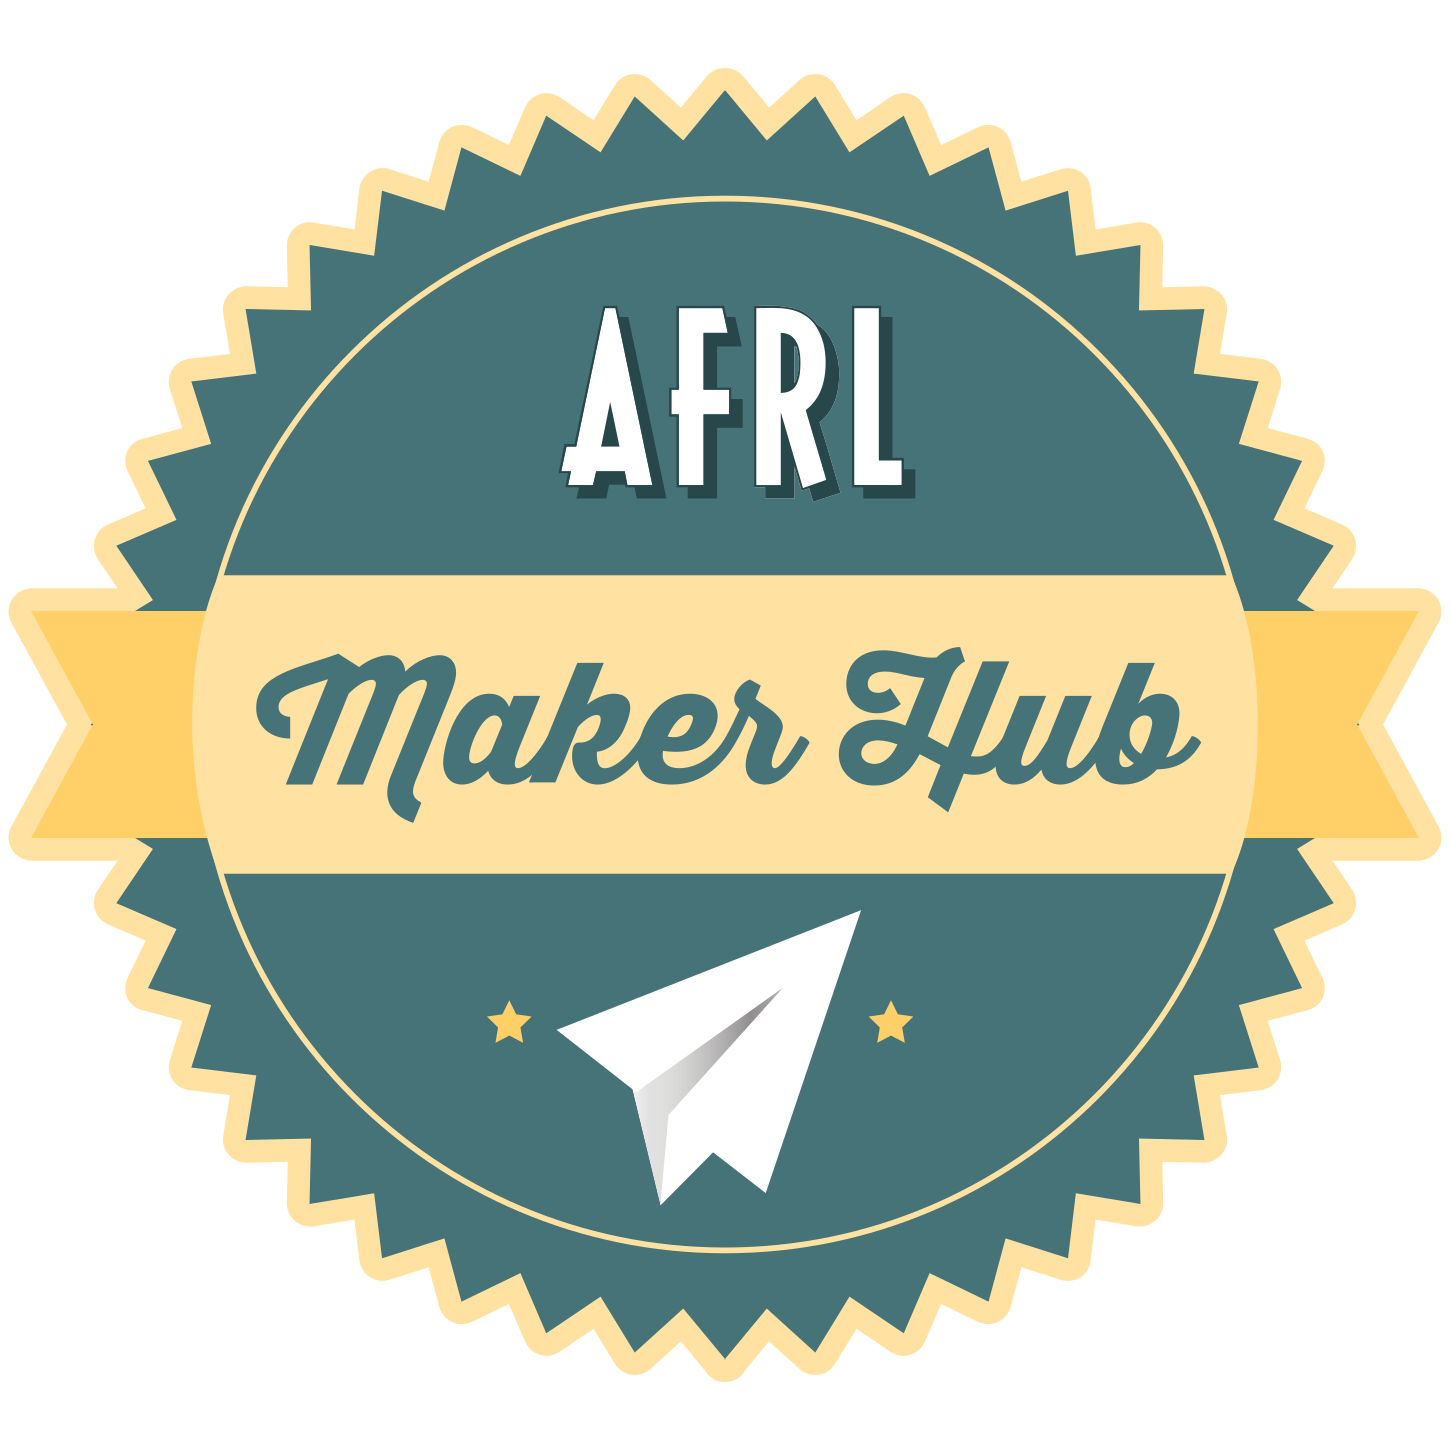 AFRL Maker Hub